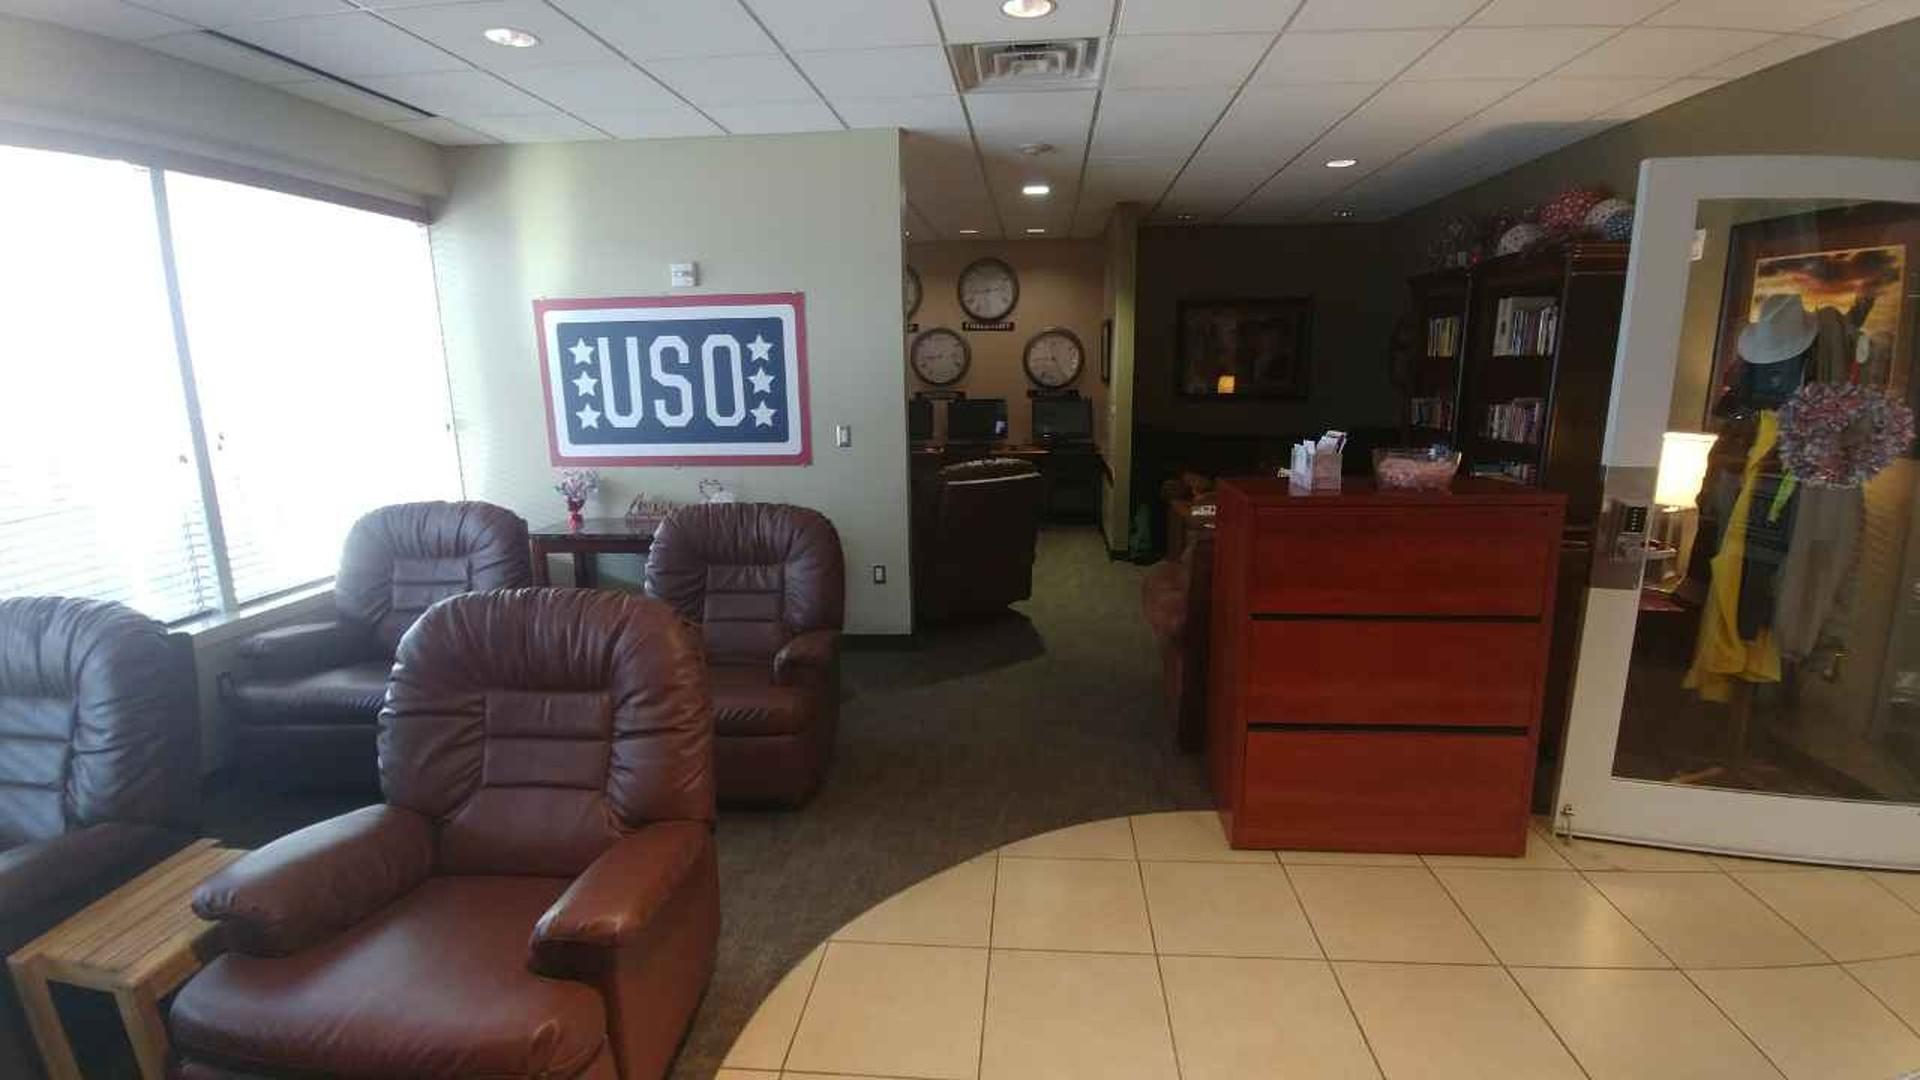 USO Lounge image 2 of 3